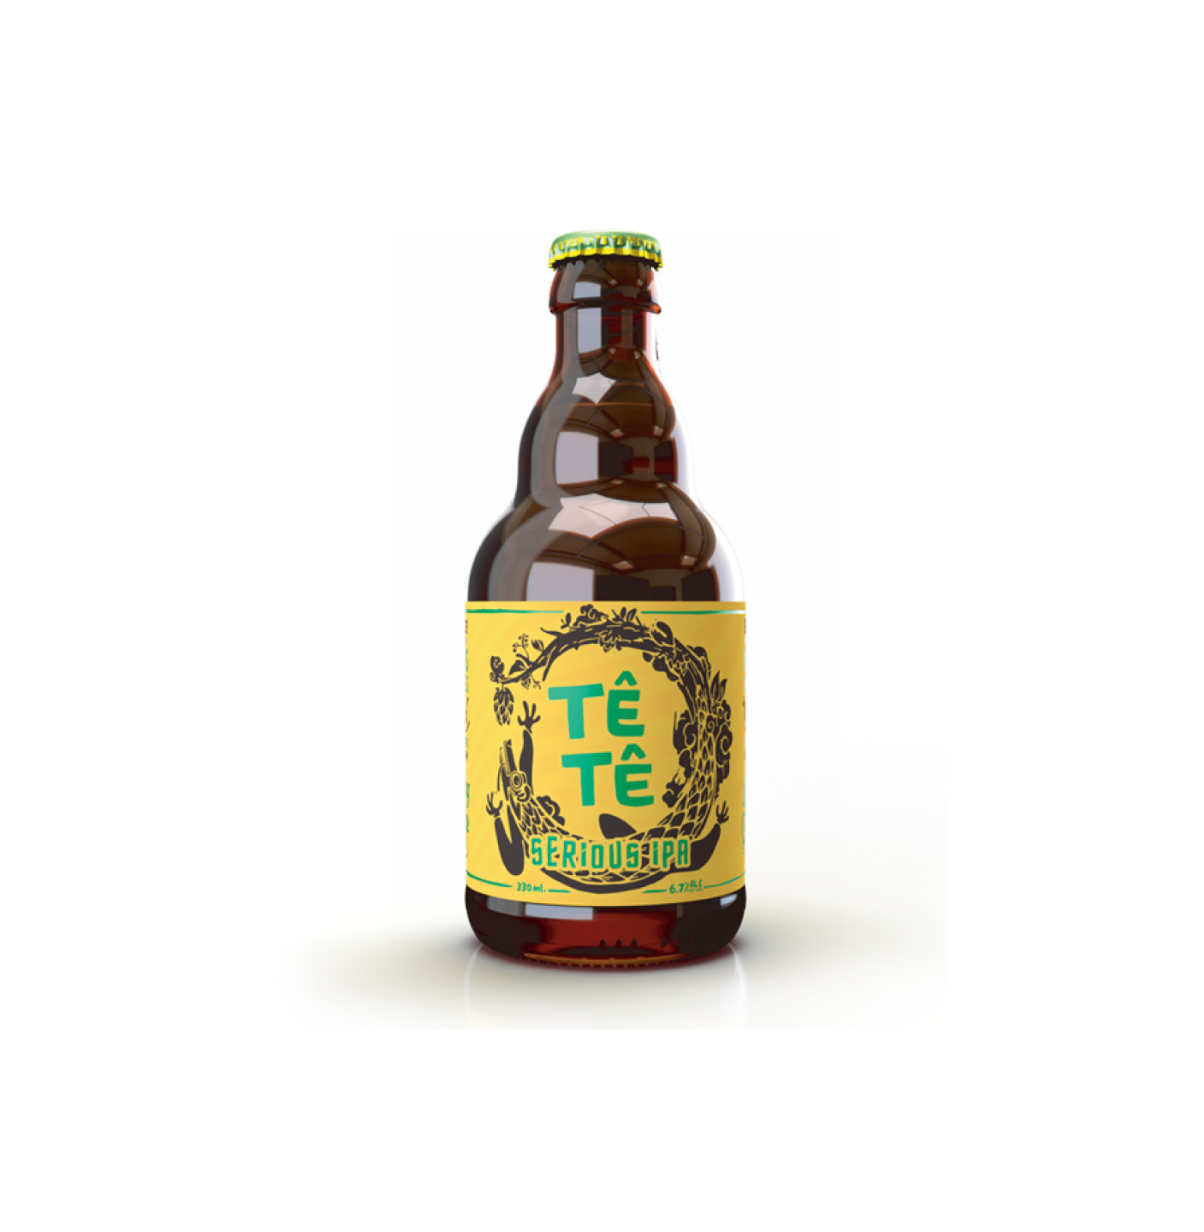 【30元4支】TeTe Serious IPA手工啤酒 330ml